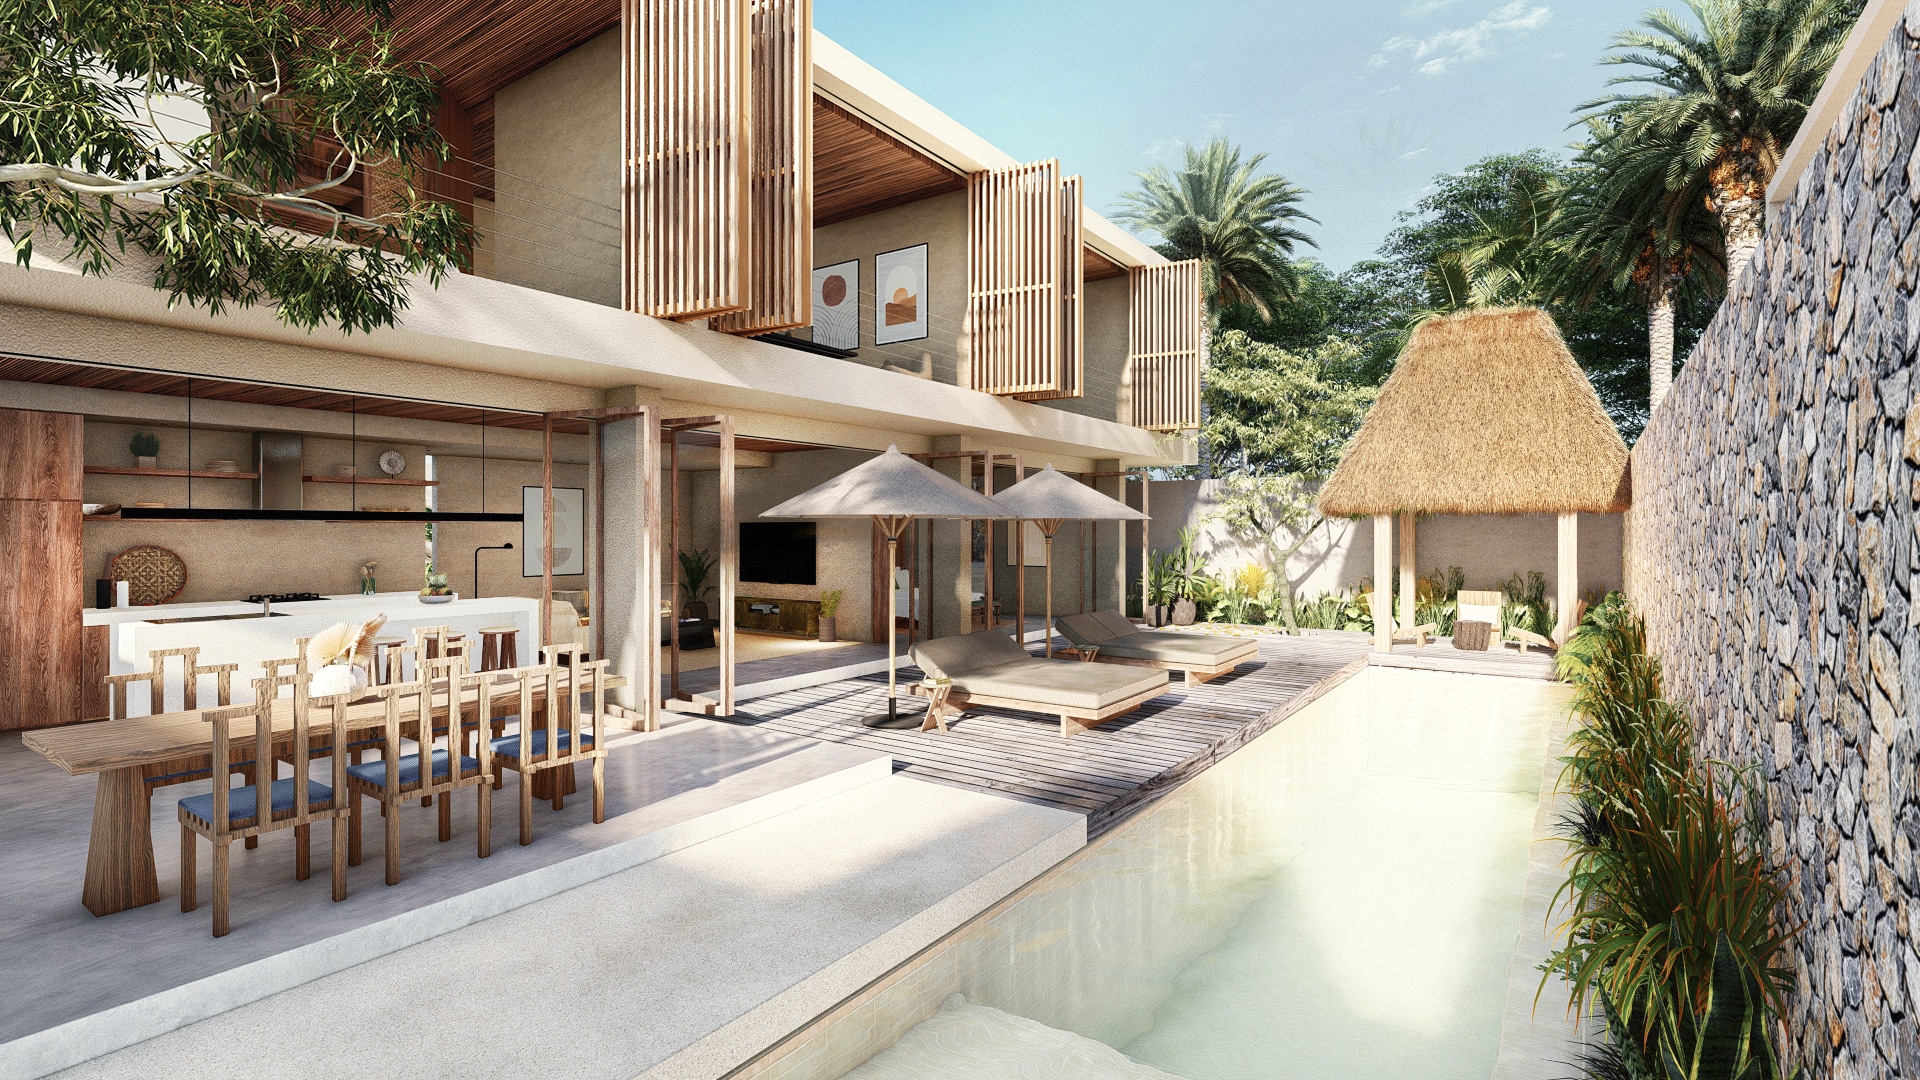 Design Assembly - Labuan Bajo Villas - Bali Architect - Interior Design - Villa - Swimming Pool